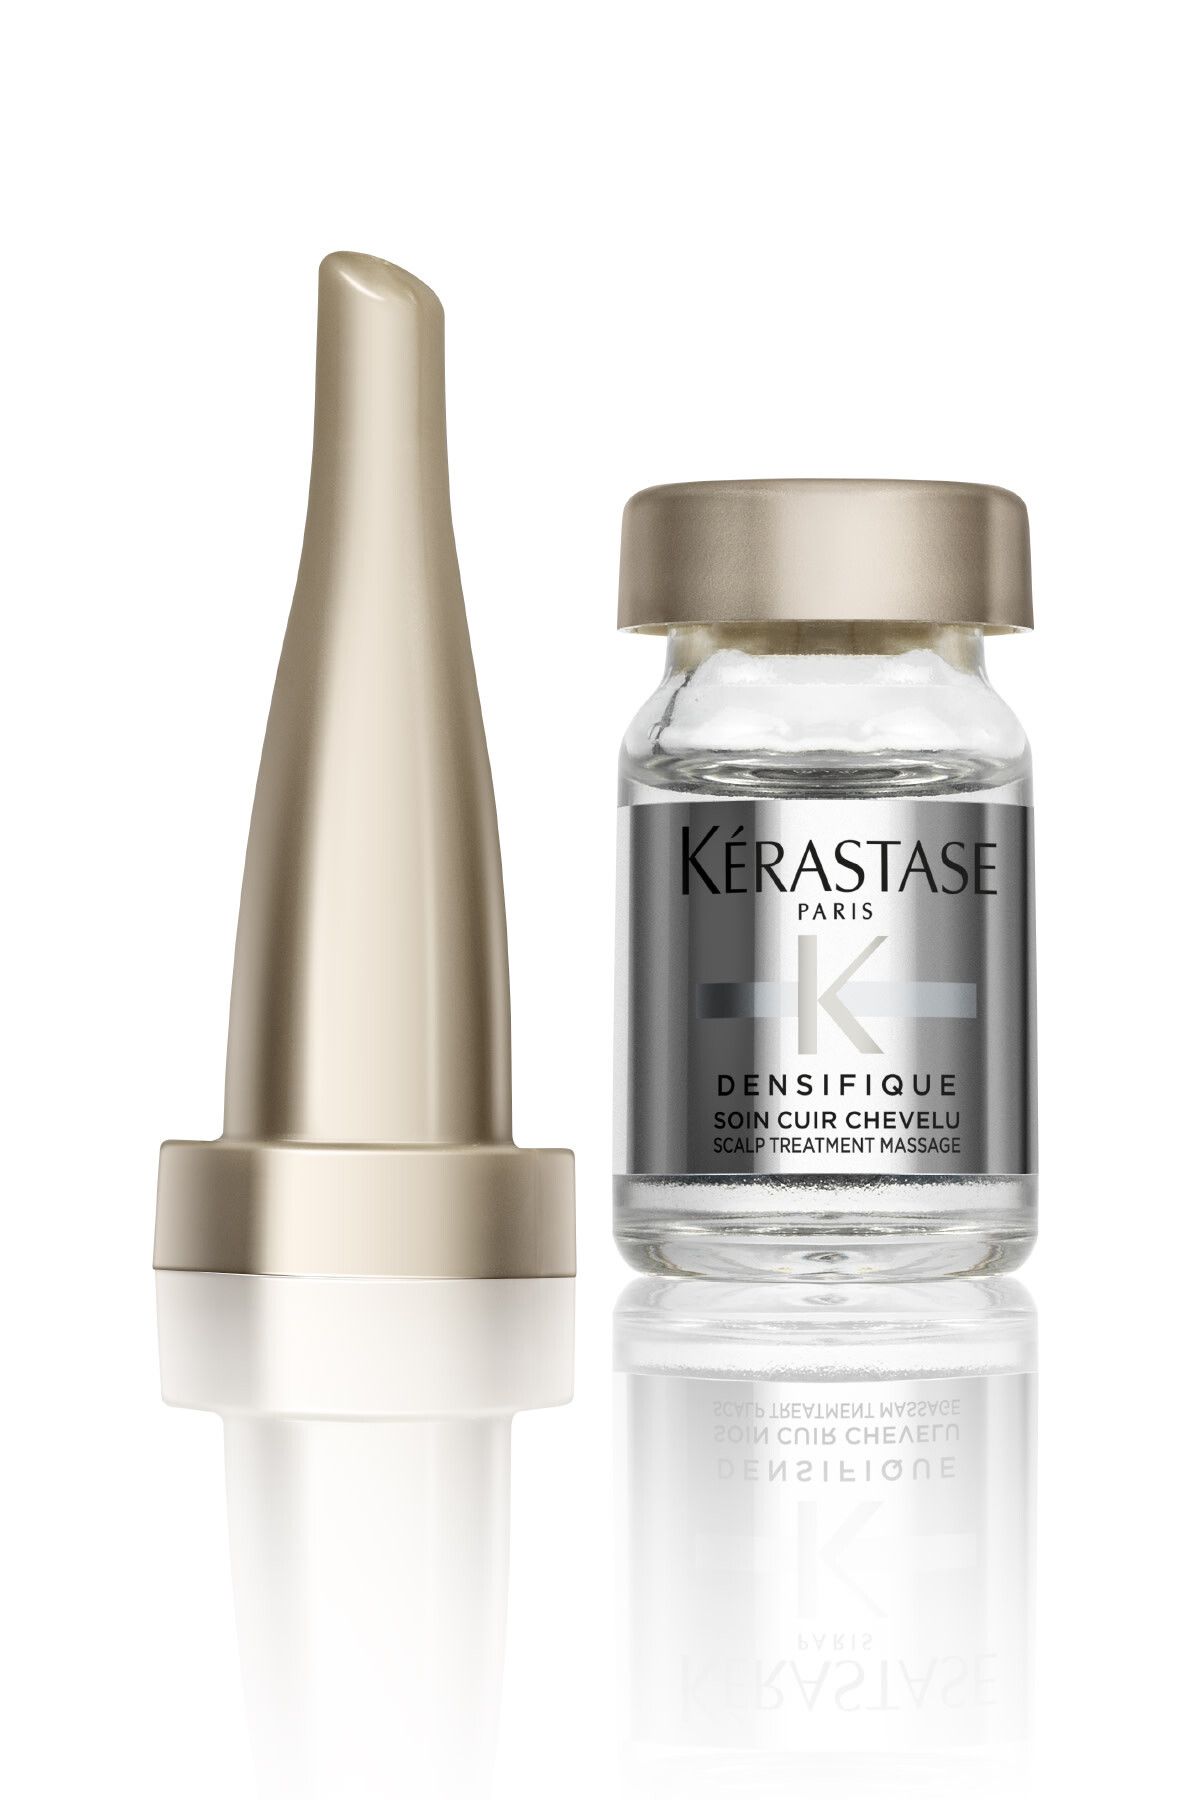 سرم درمانی افزایش دهنده حجم مو Densifique Cure دانسیفیک کیور 180میل  کراستاس Kerastase